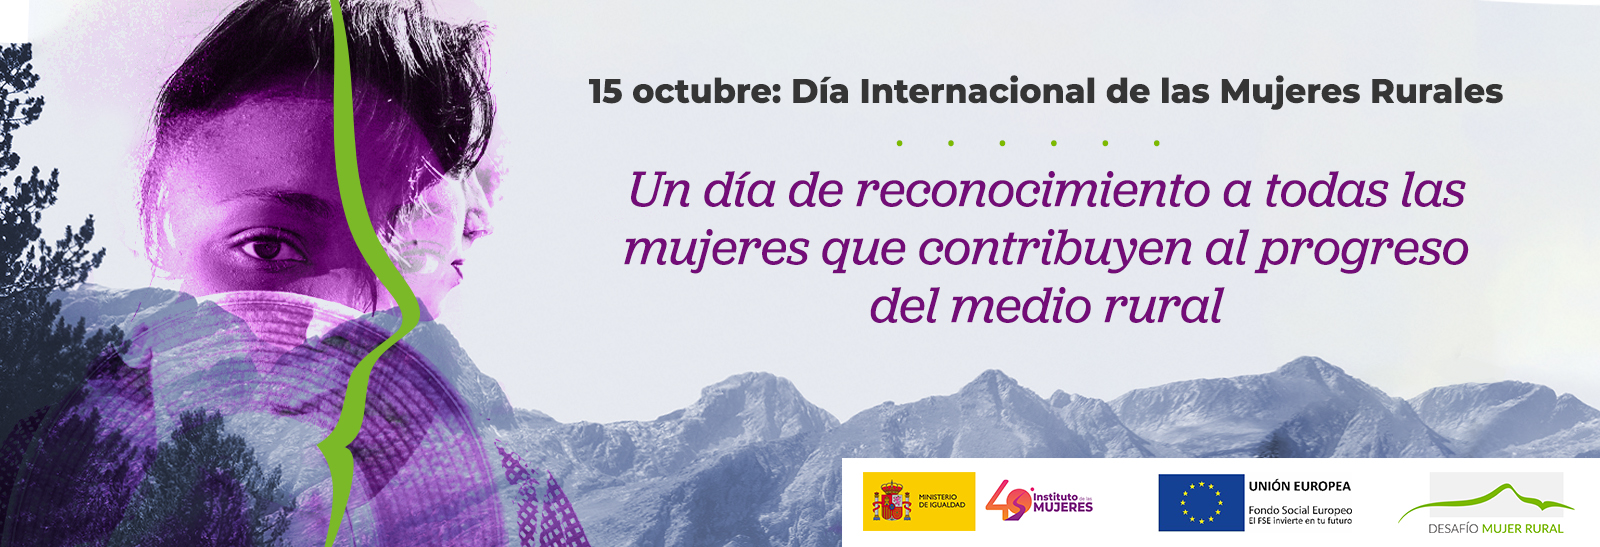 15 de octubre: Día Internacional de las Mujeres Rurales. Un día de reconocimiento a todas las mujeres que contribuyen al progreso del medio rural.